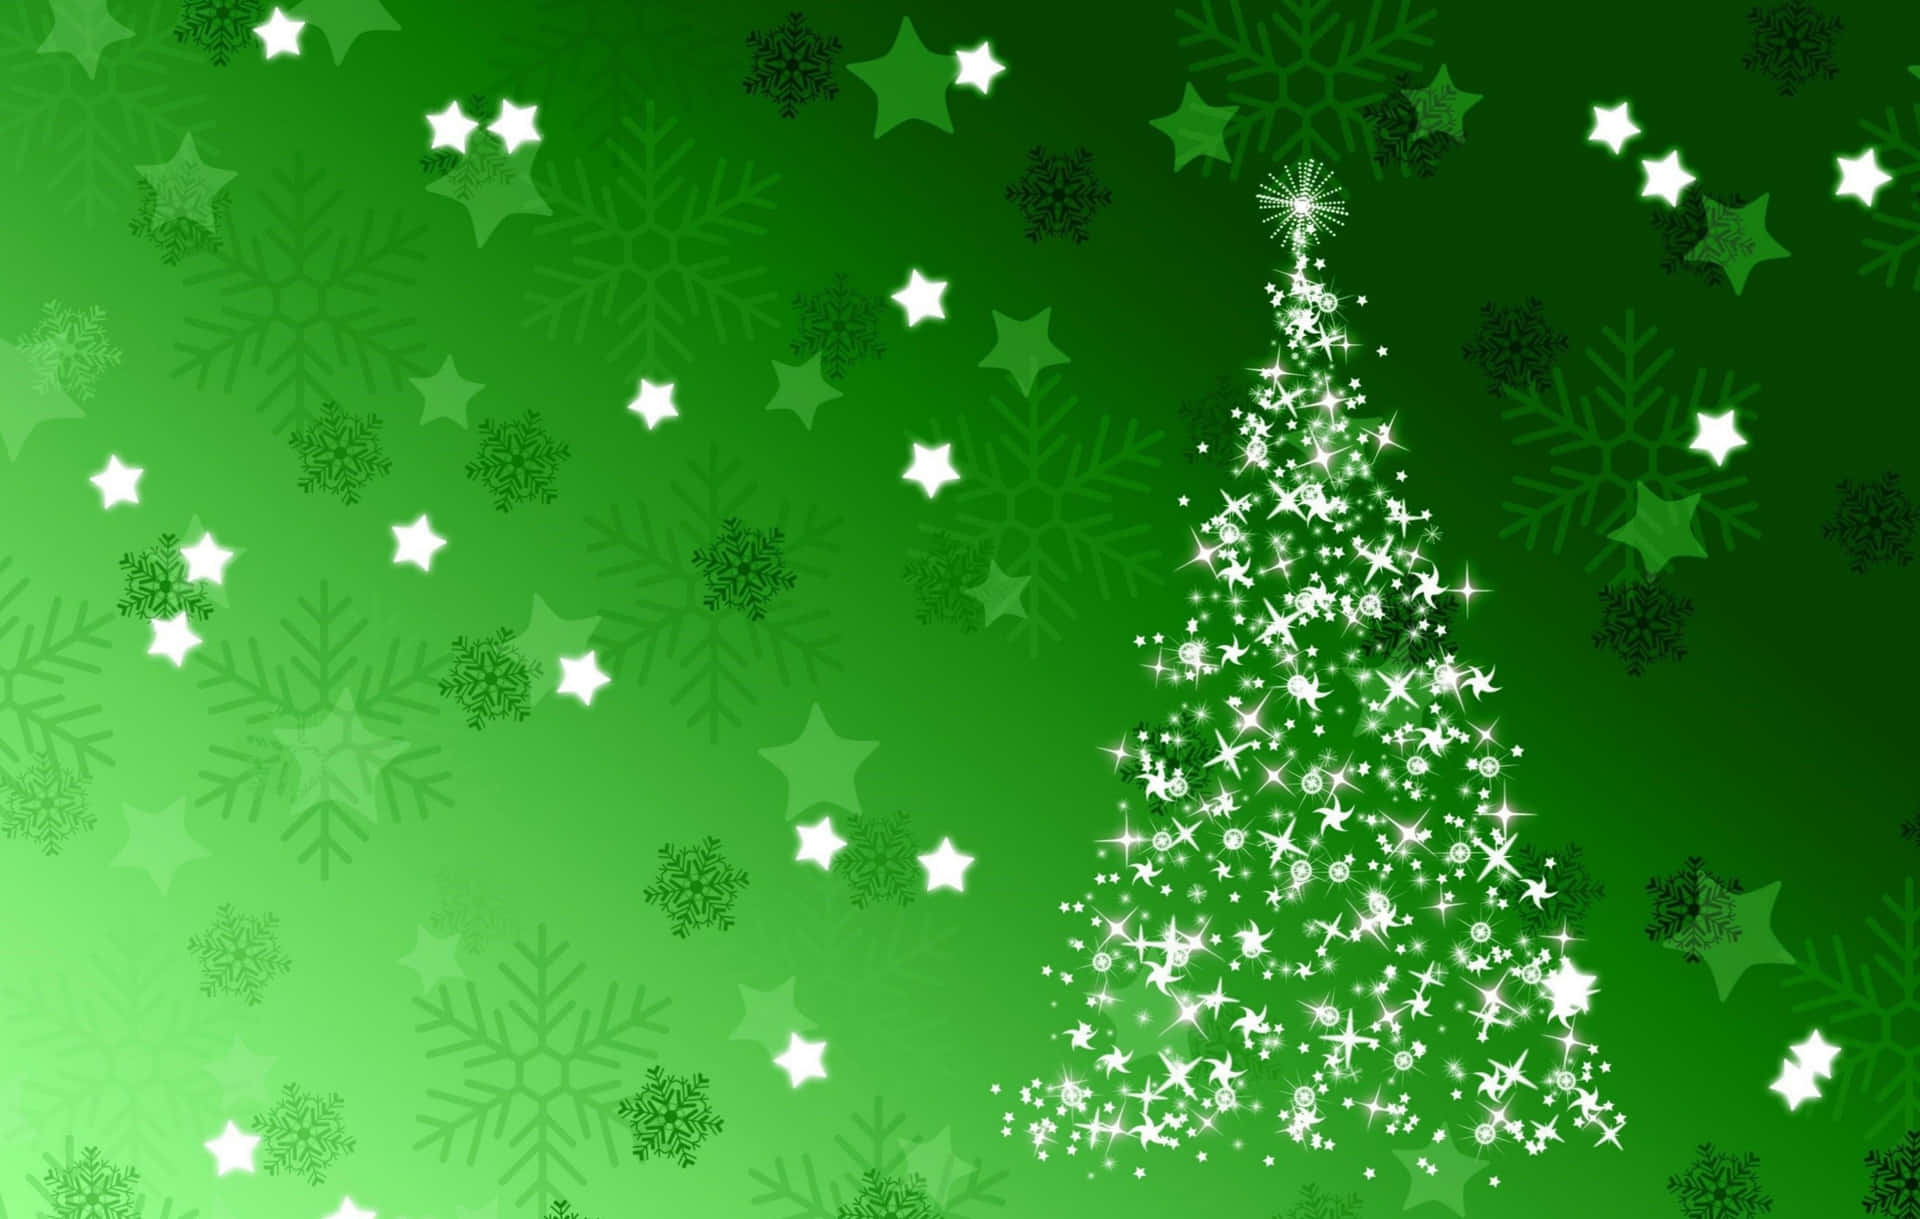 Eingrünes Weihnachten: Voller Freude Und Gelächter Wallpaper